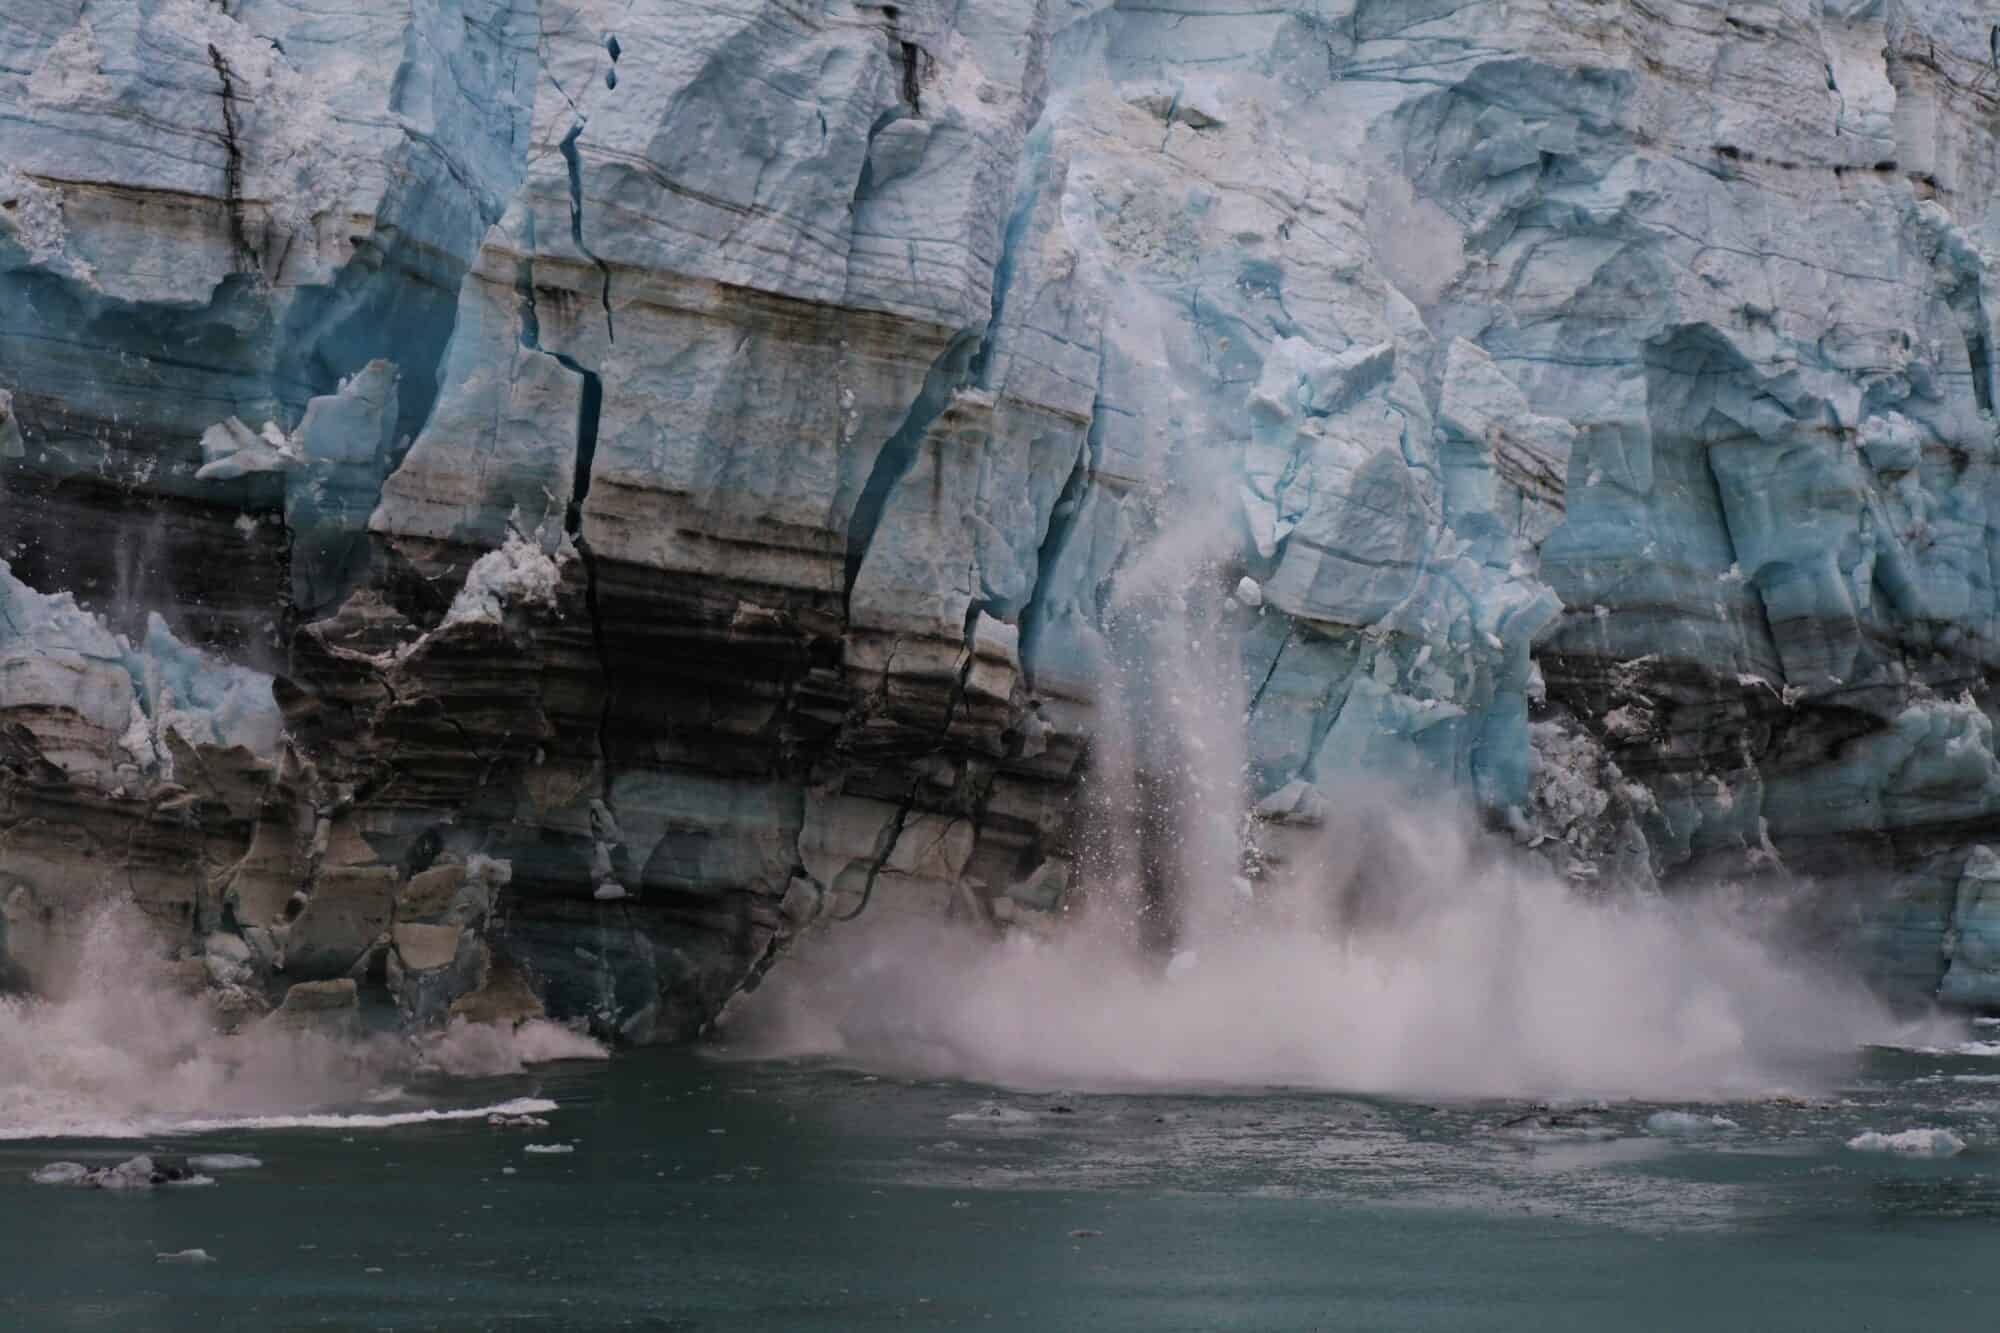 A melting glacier crashes into the ocean.